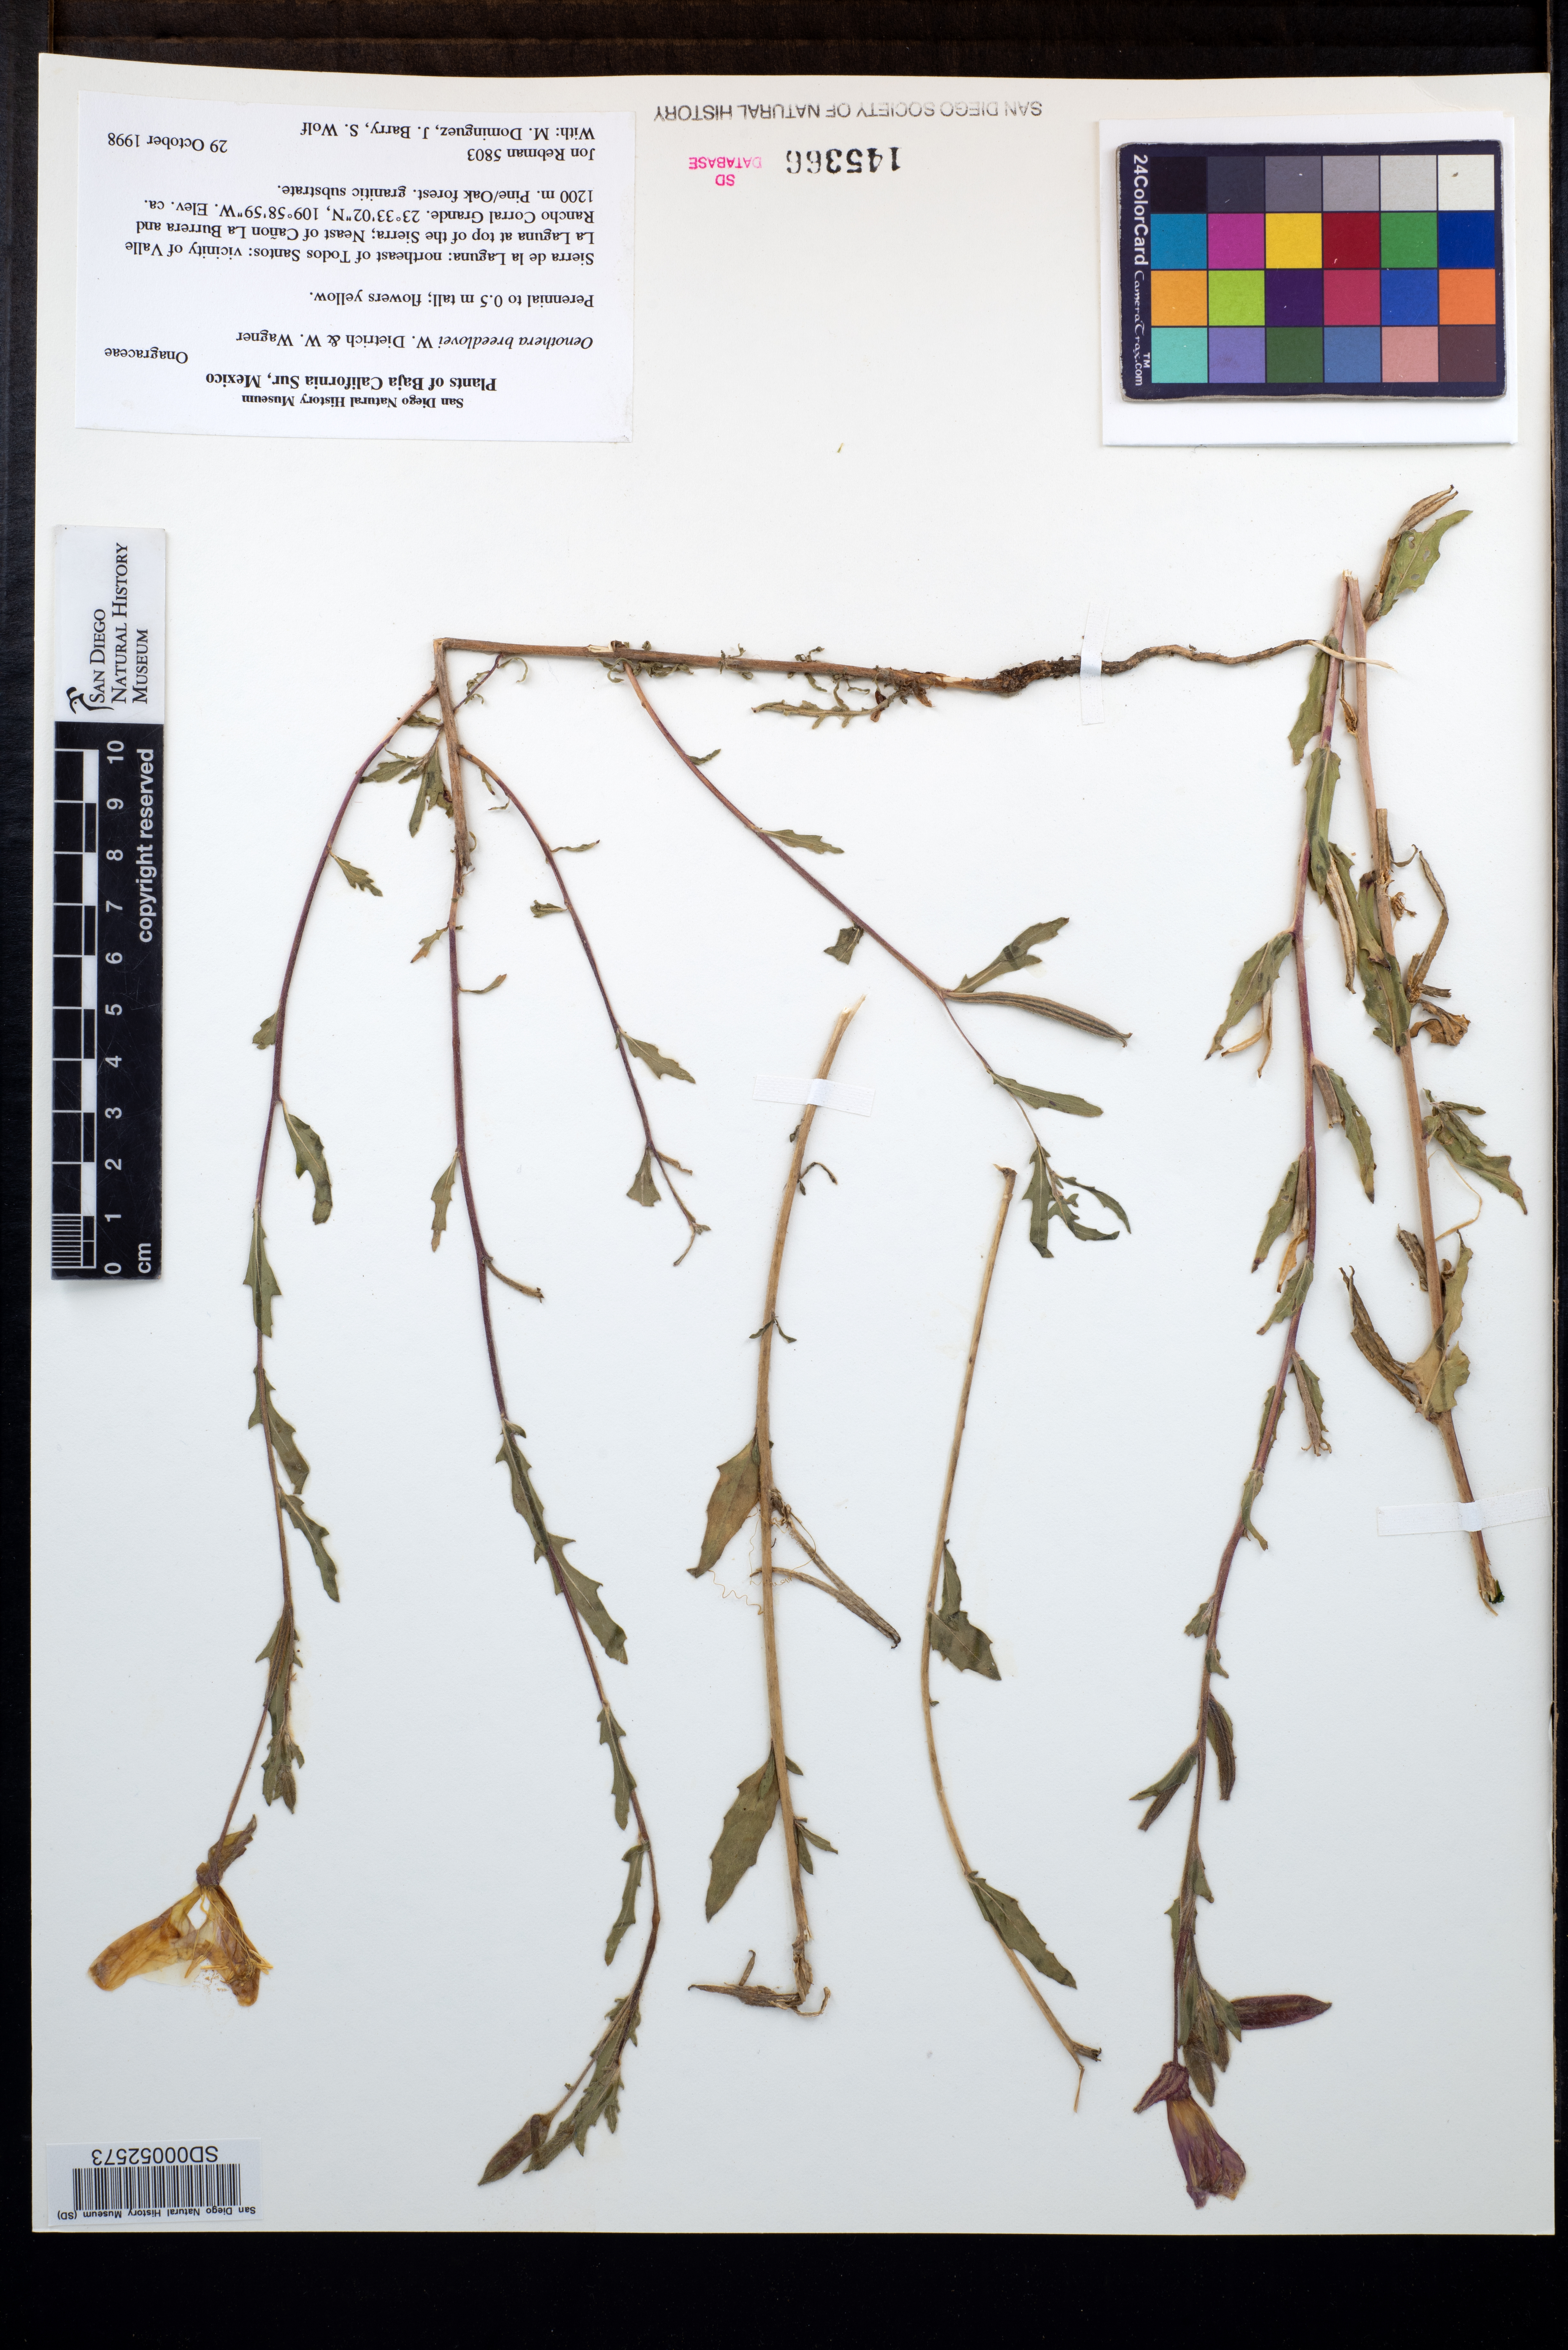 Oenothera breedlovei image